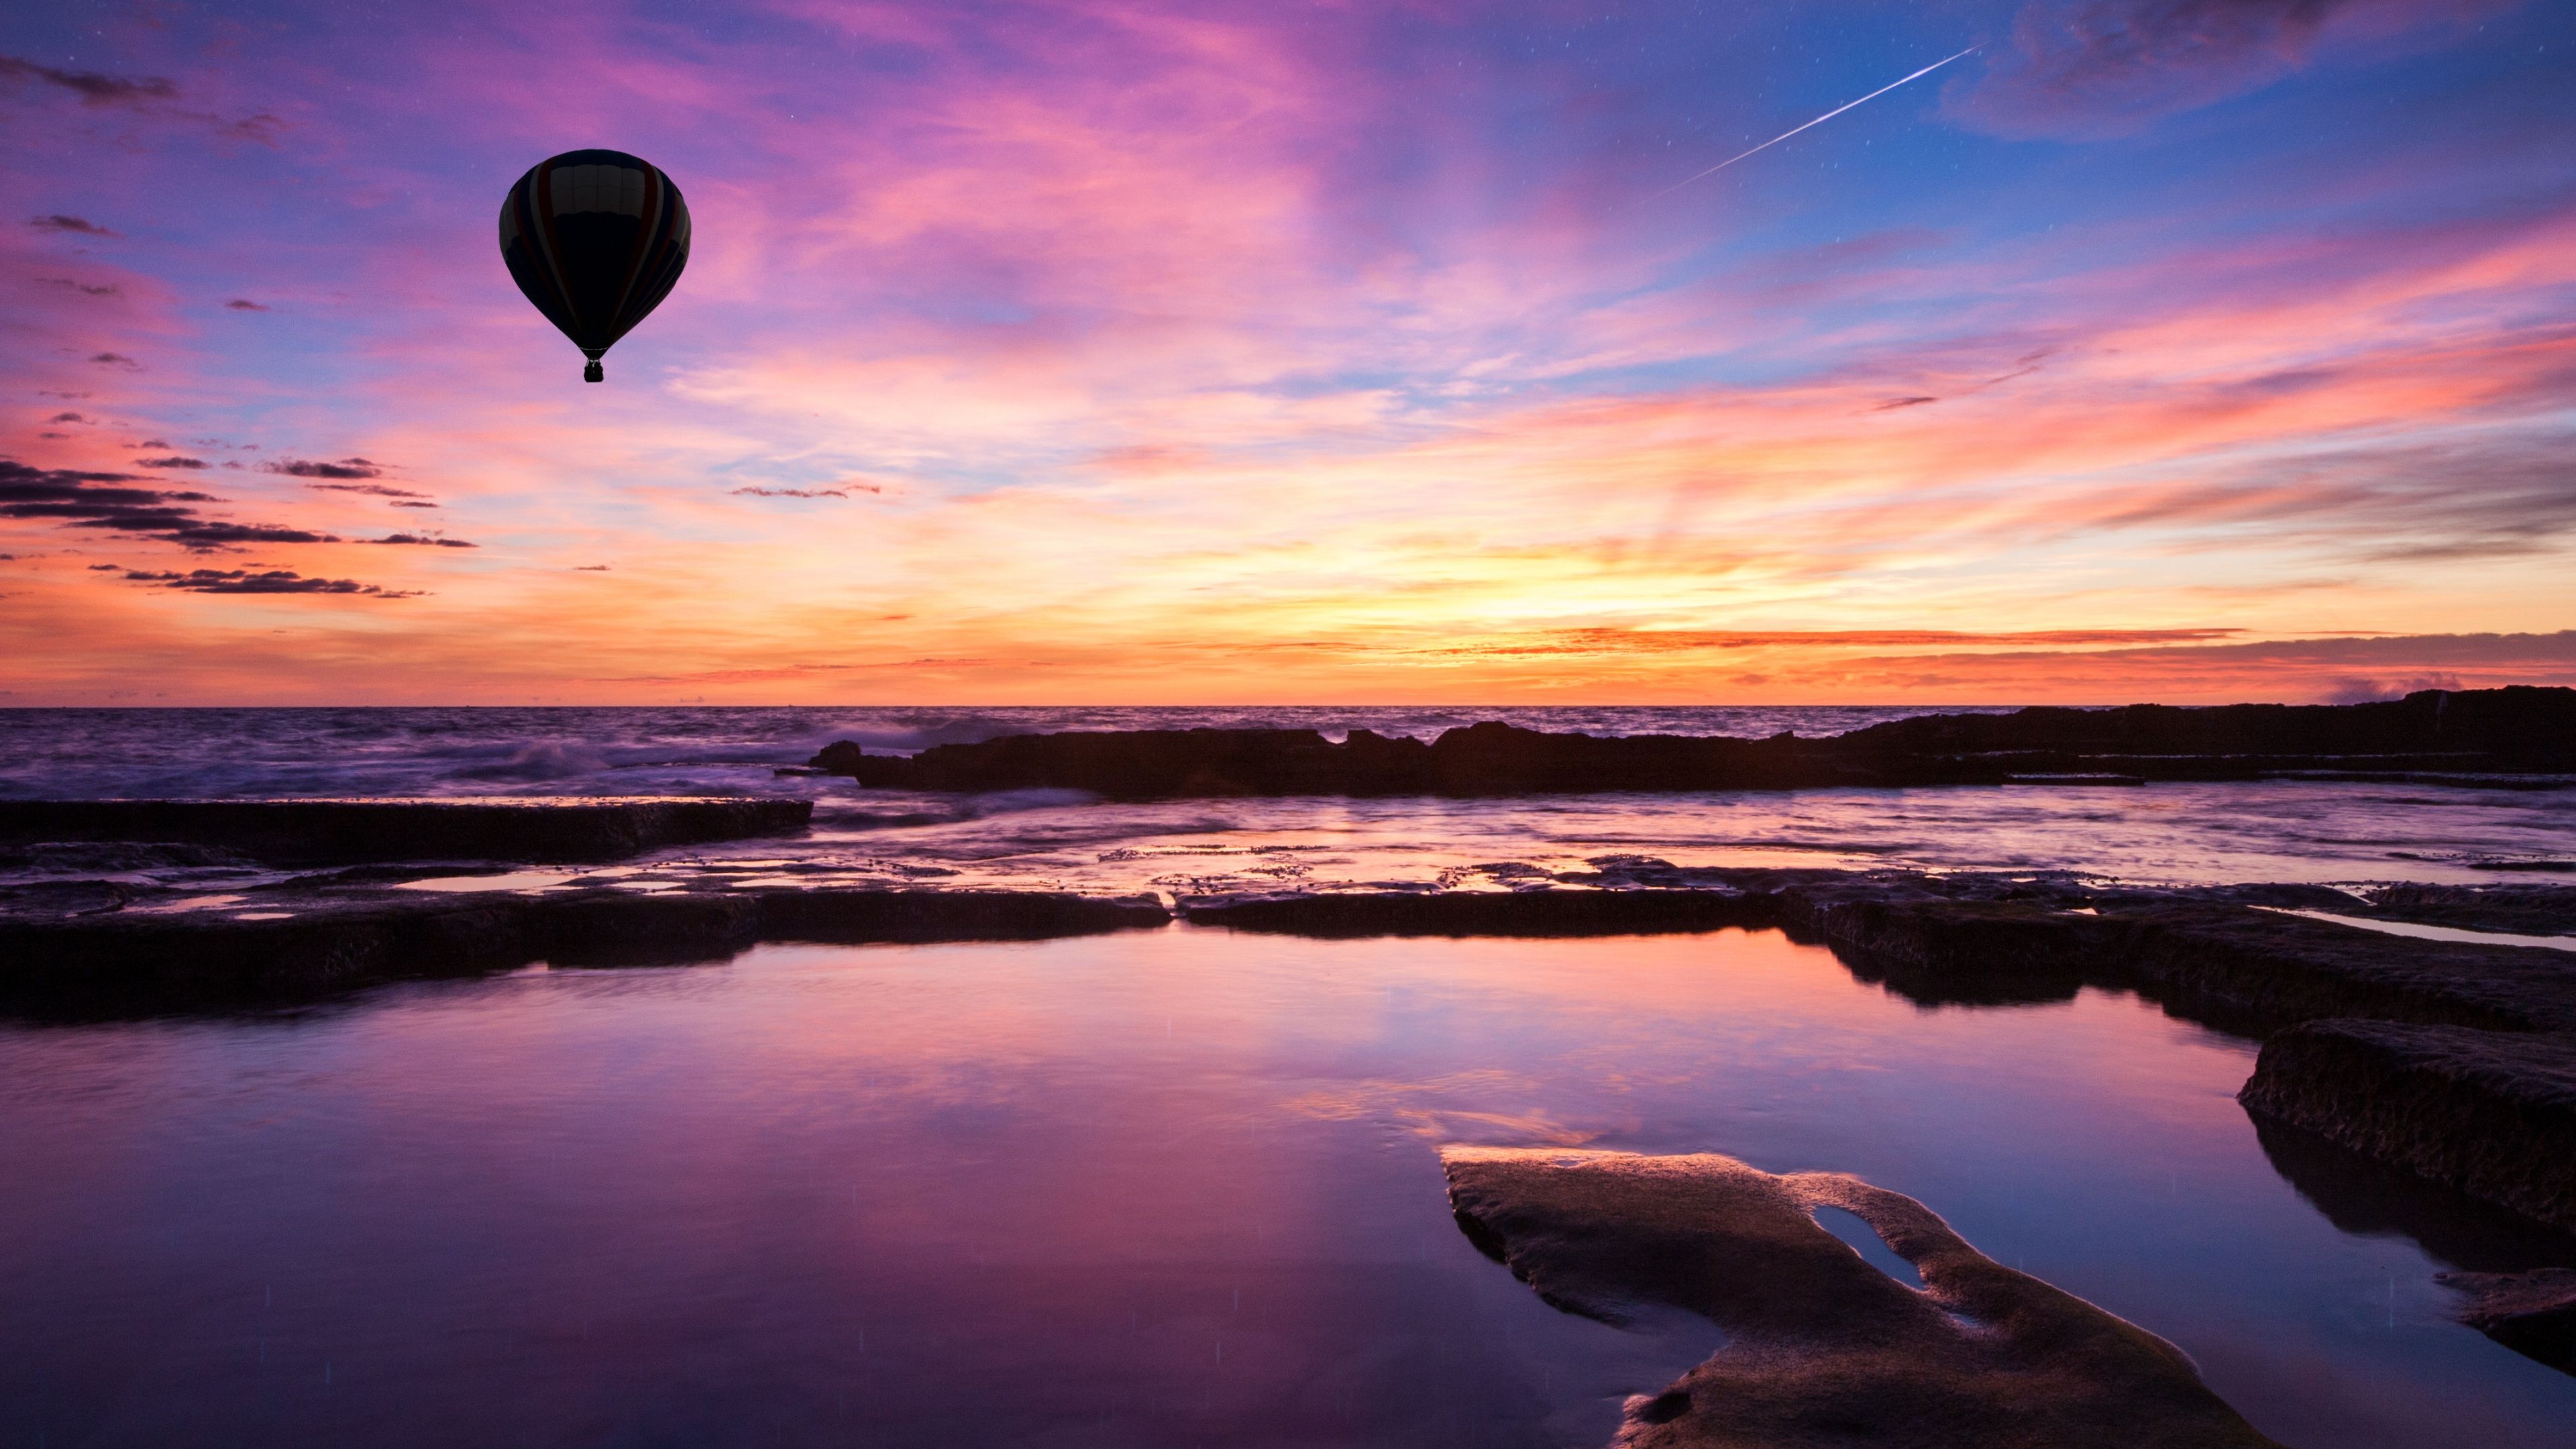 Hot air balloon Wallpaper 4K, Sunset, Silhouette, Nature